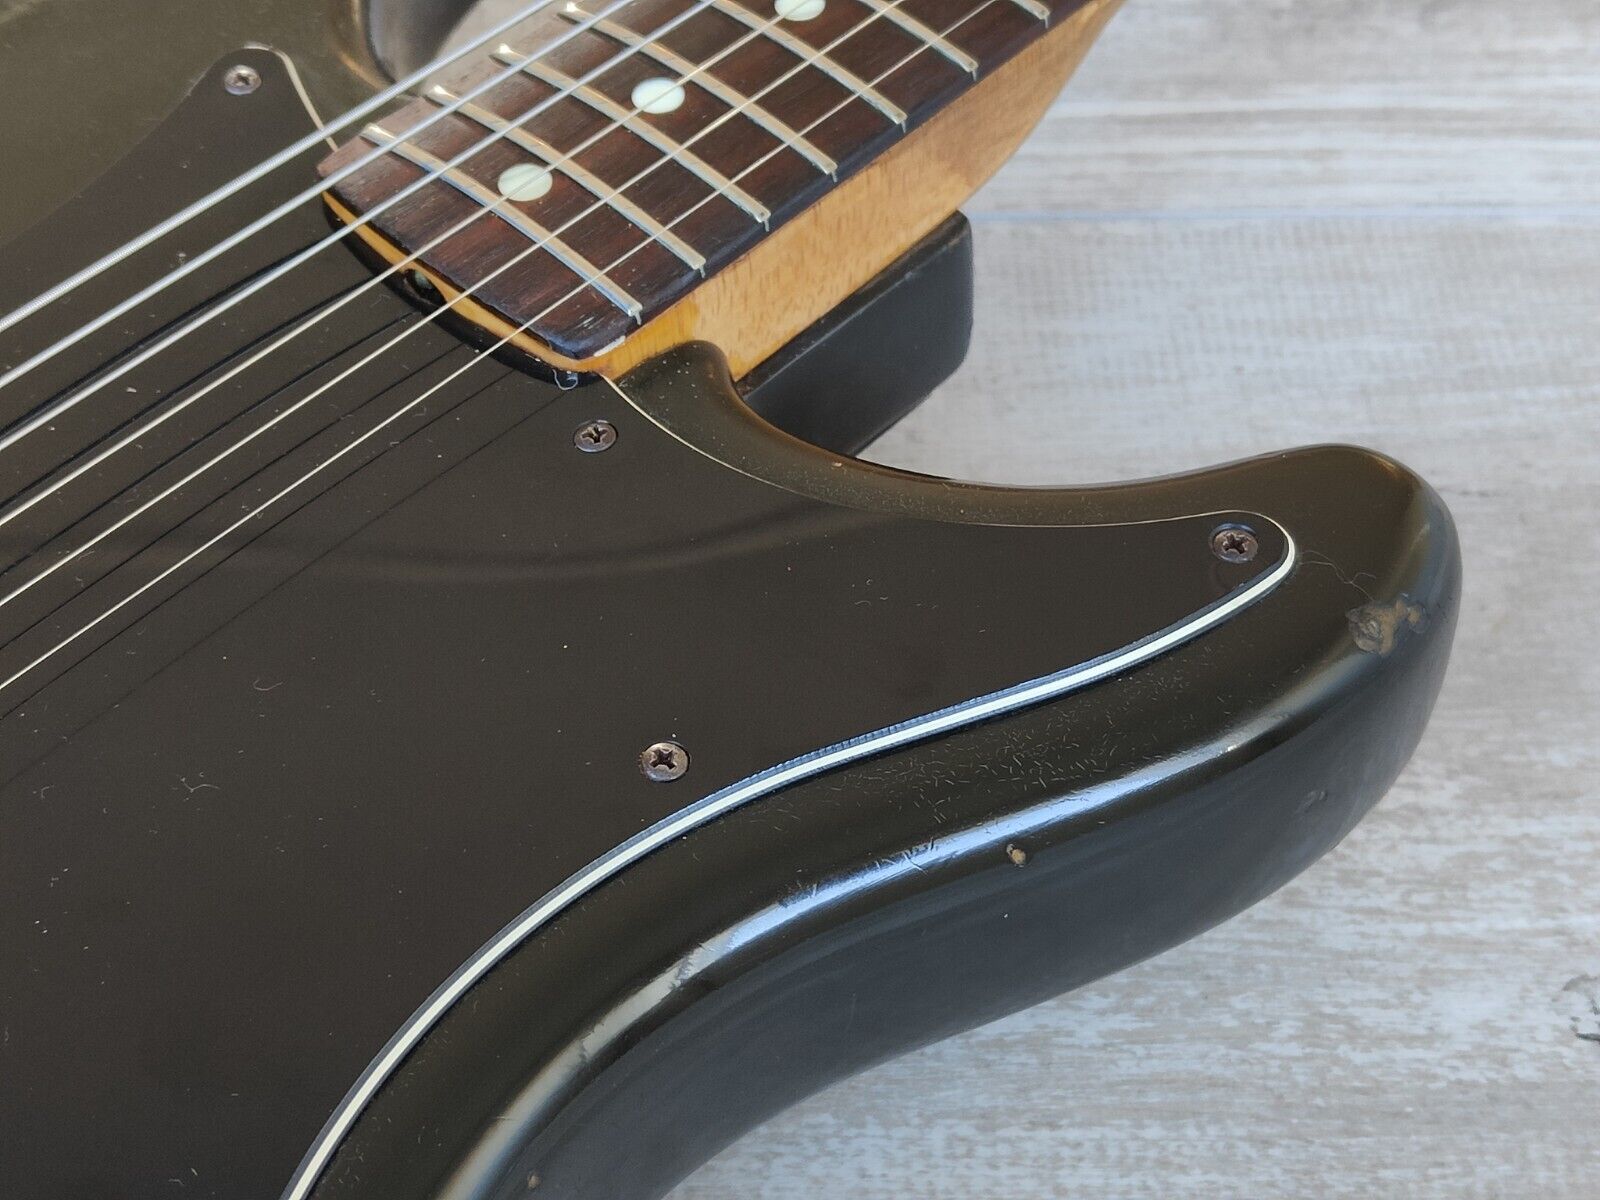 1982 Fender USA Lead I Vintage Electric Guitar (Black)